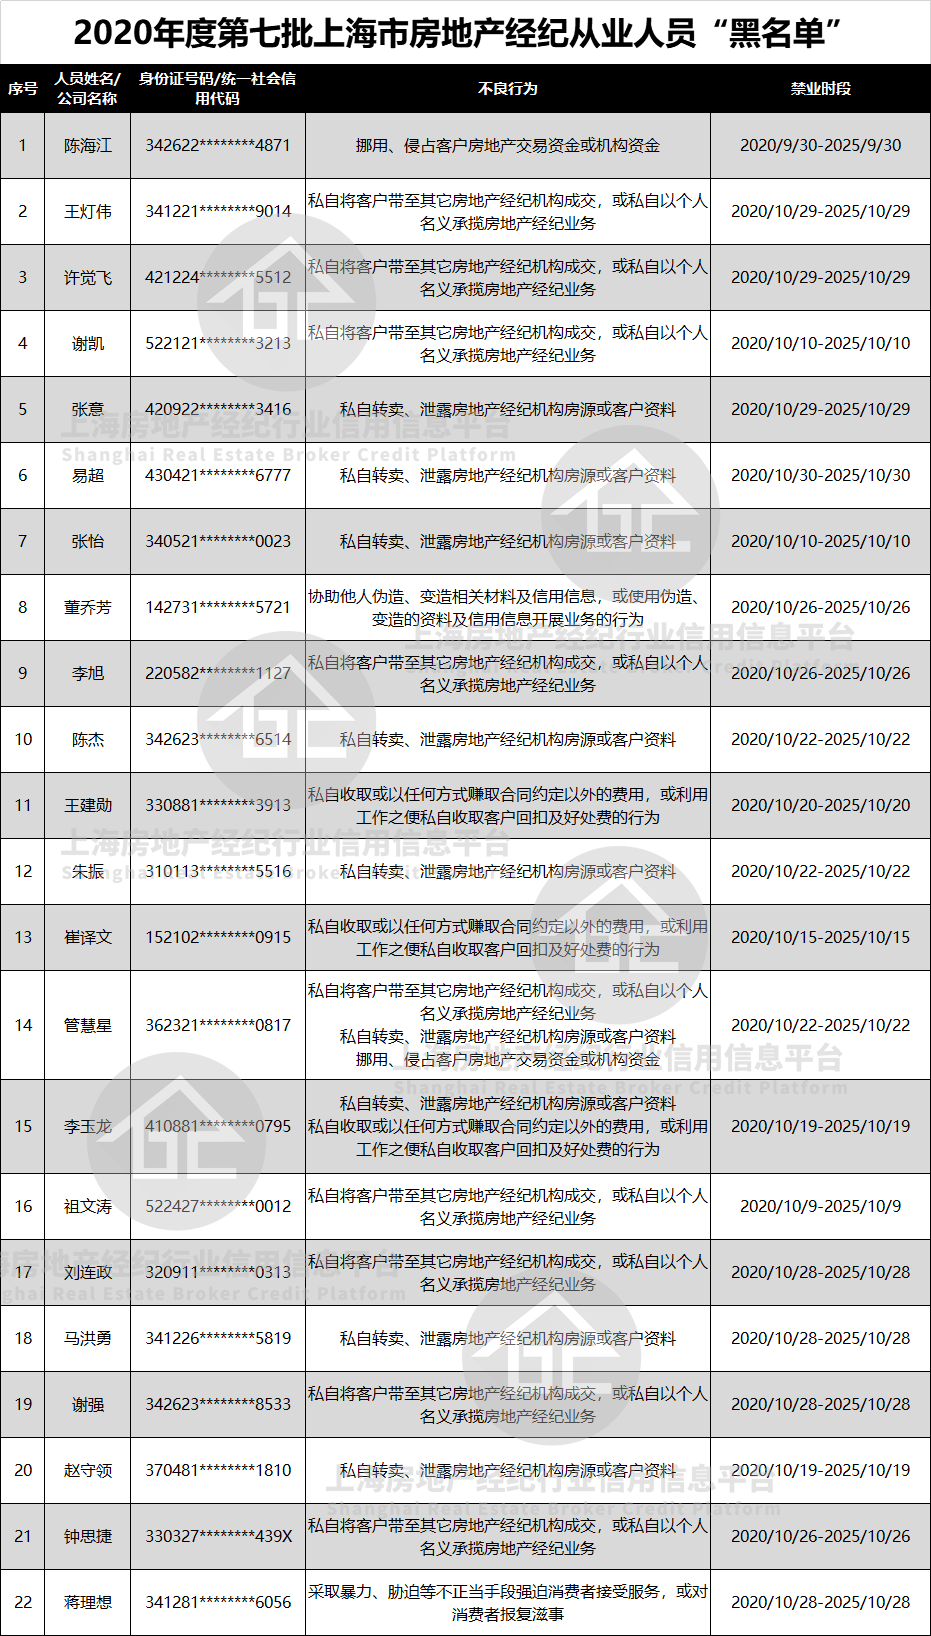 上海公示房地产经纪行业违规公示名单 共涉及22人-中国网地产